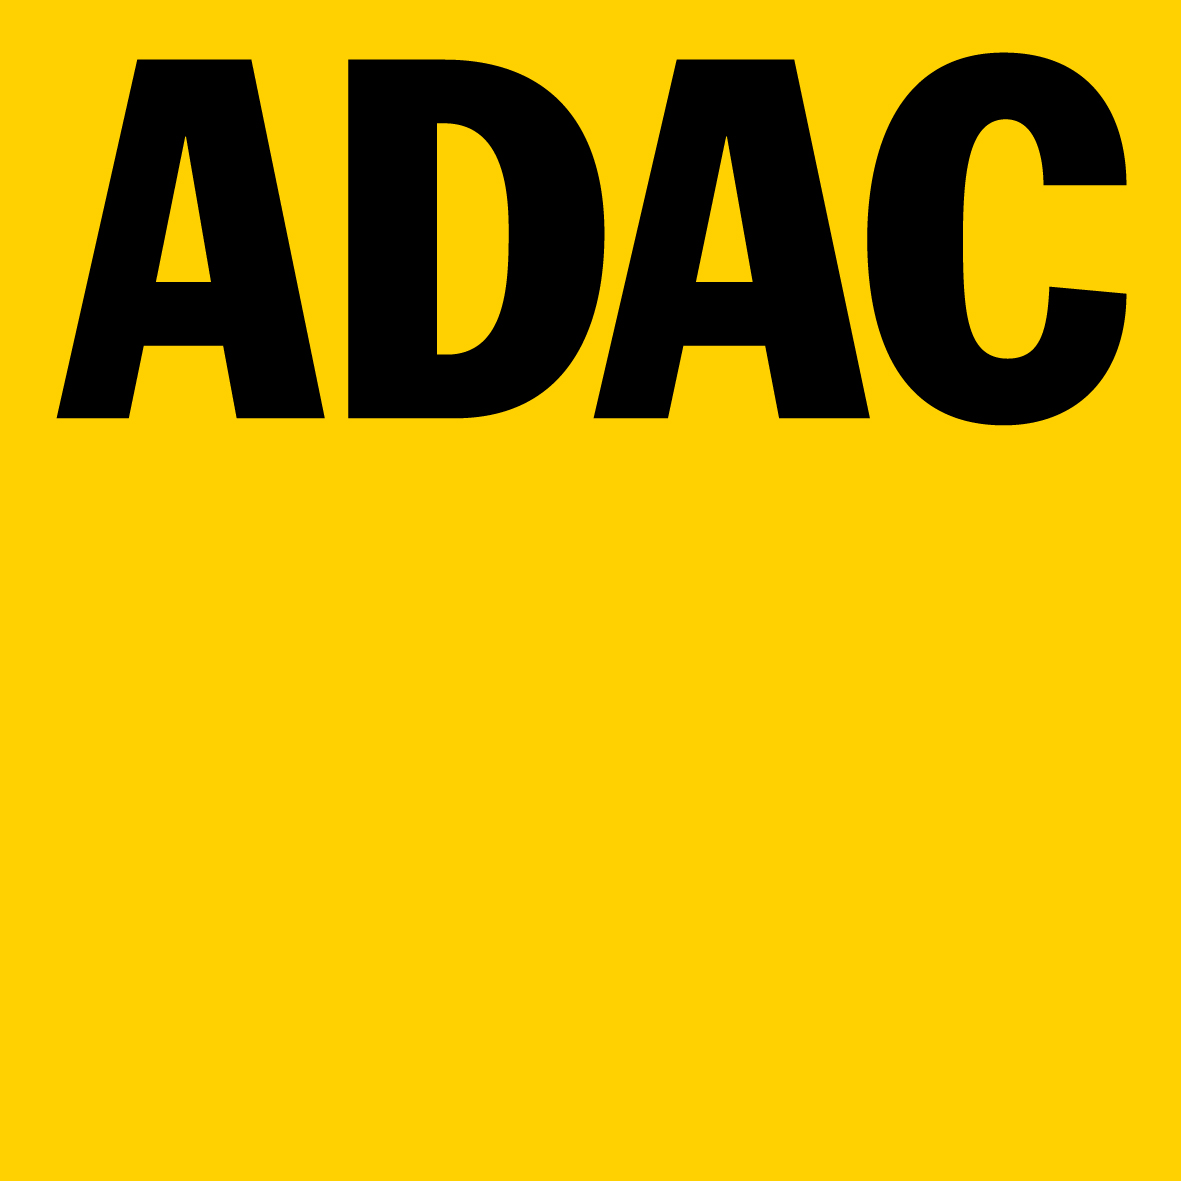 Ardaf Logo photo - 1